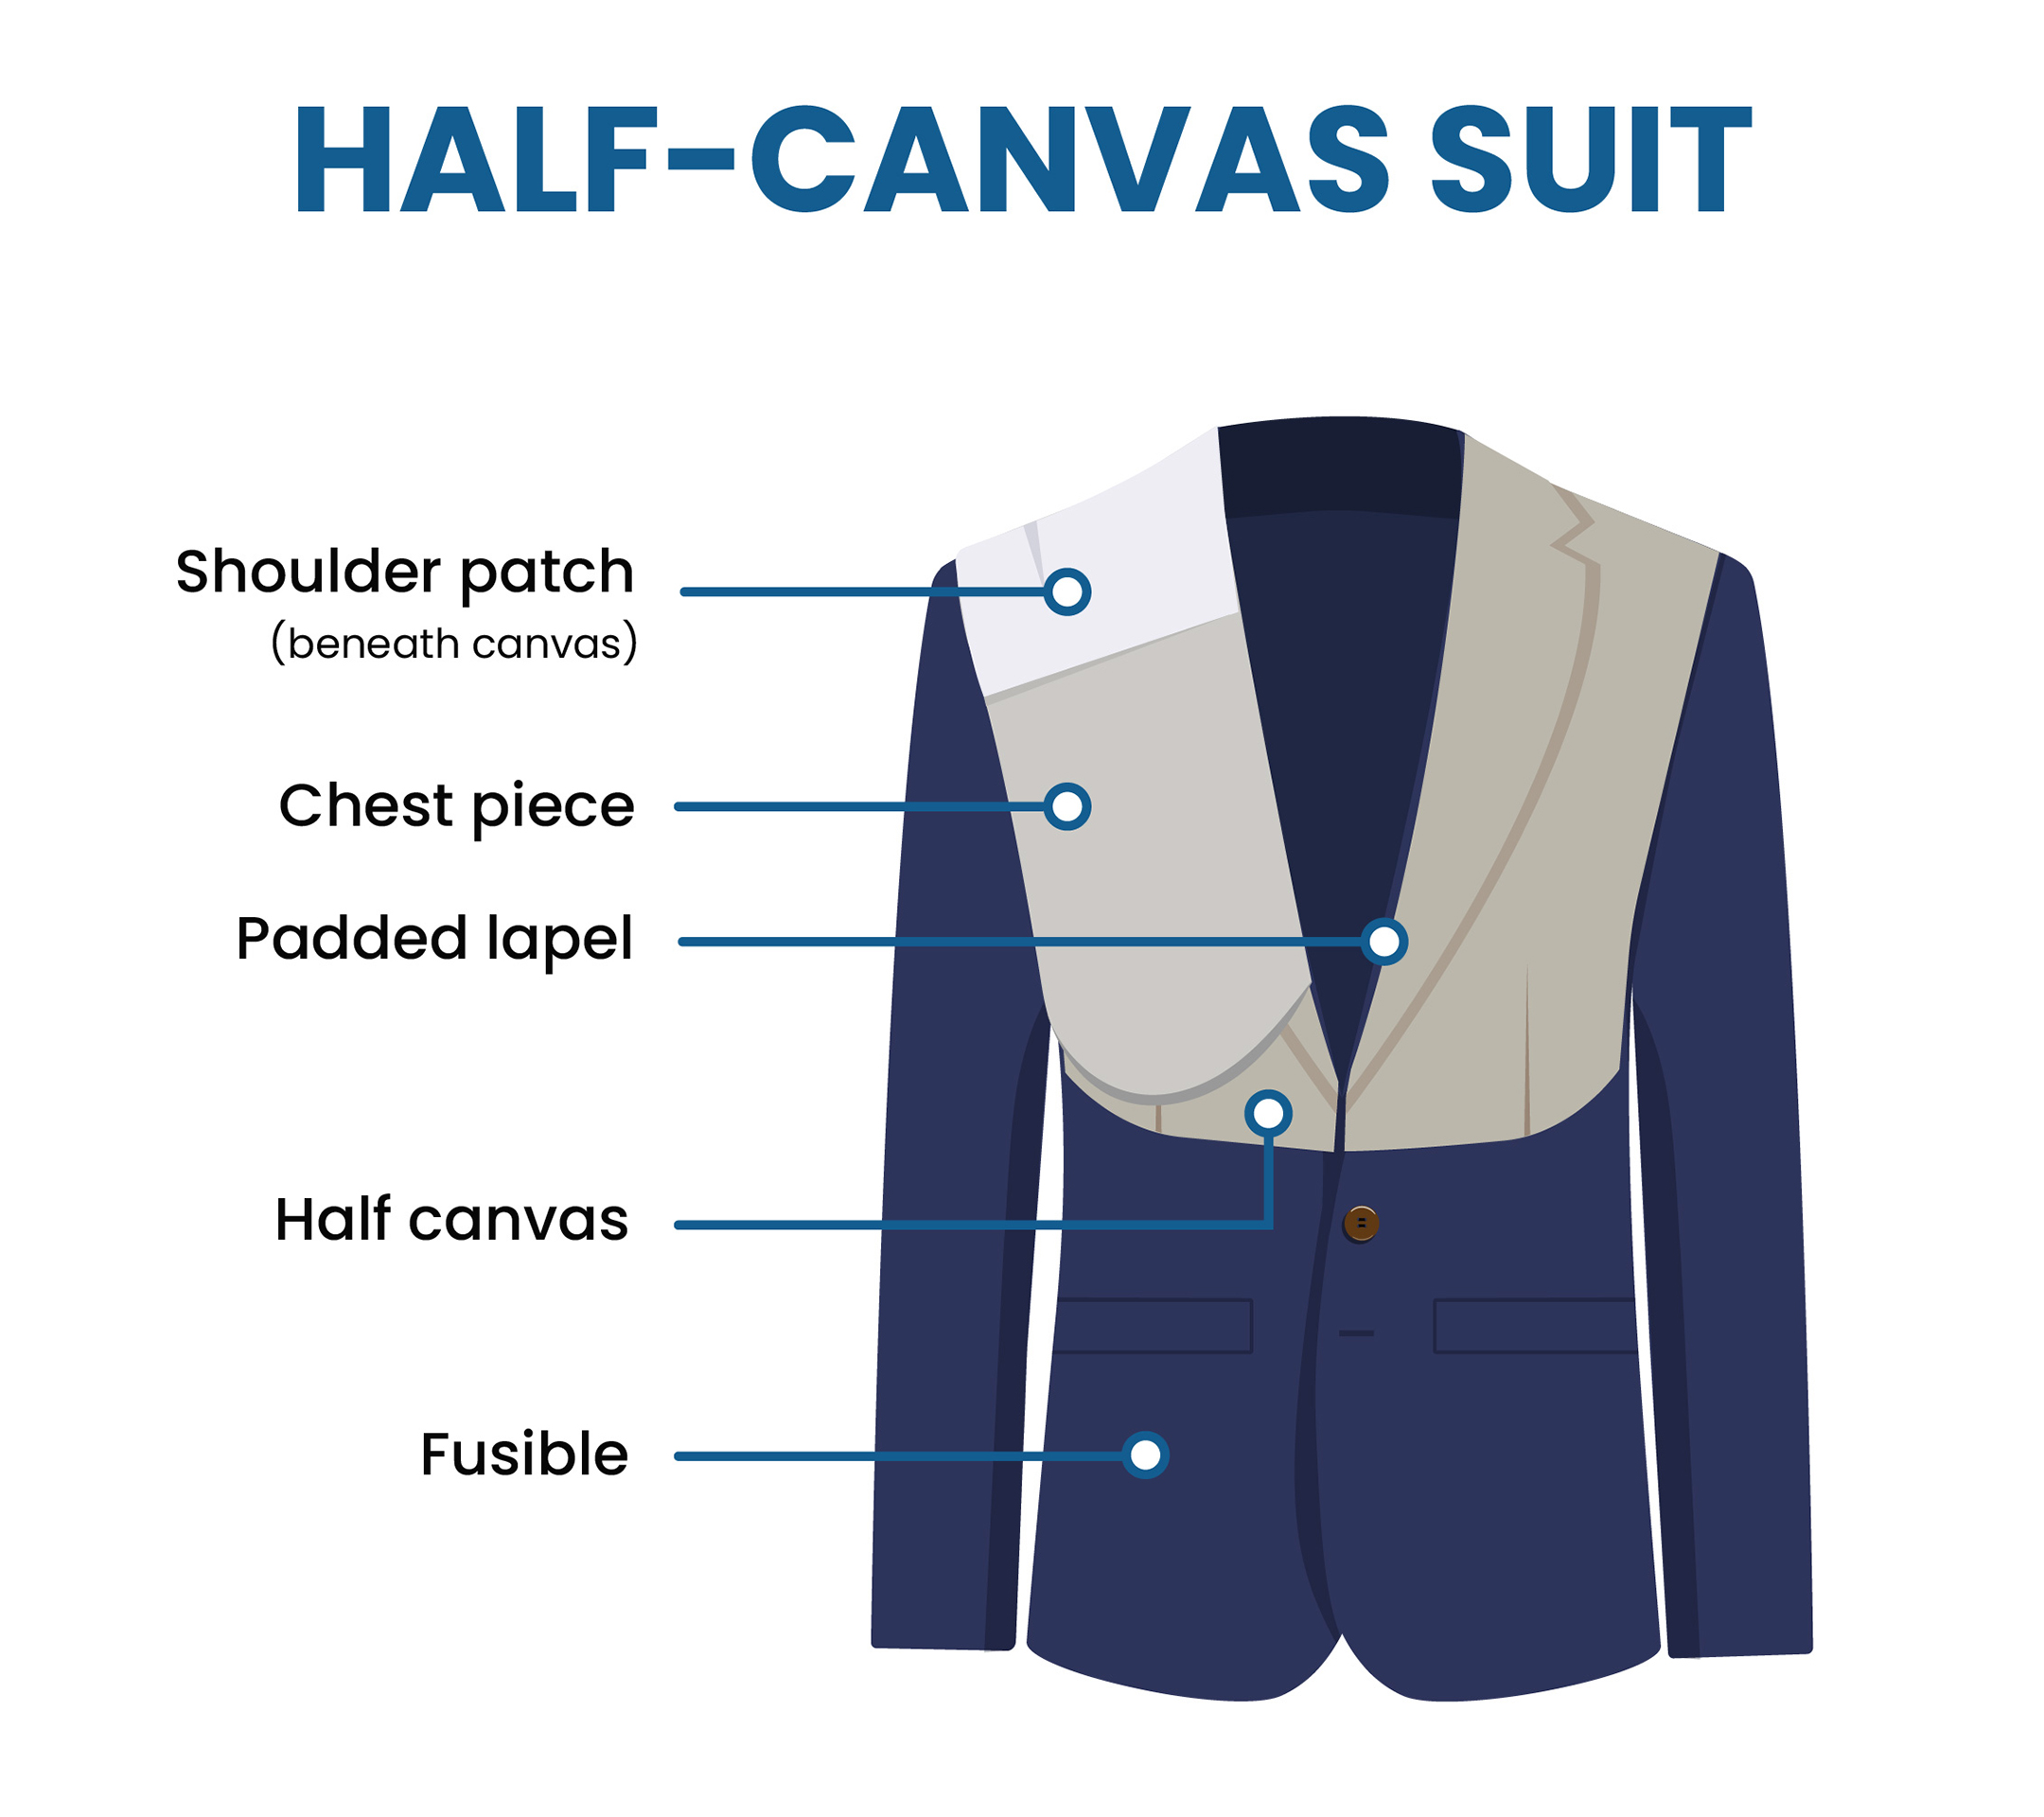 half-canvas suit jacket features